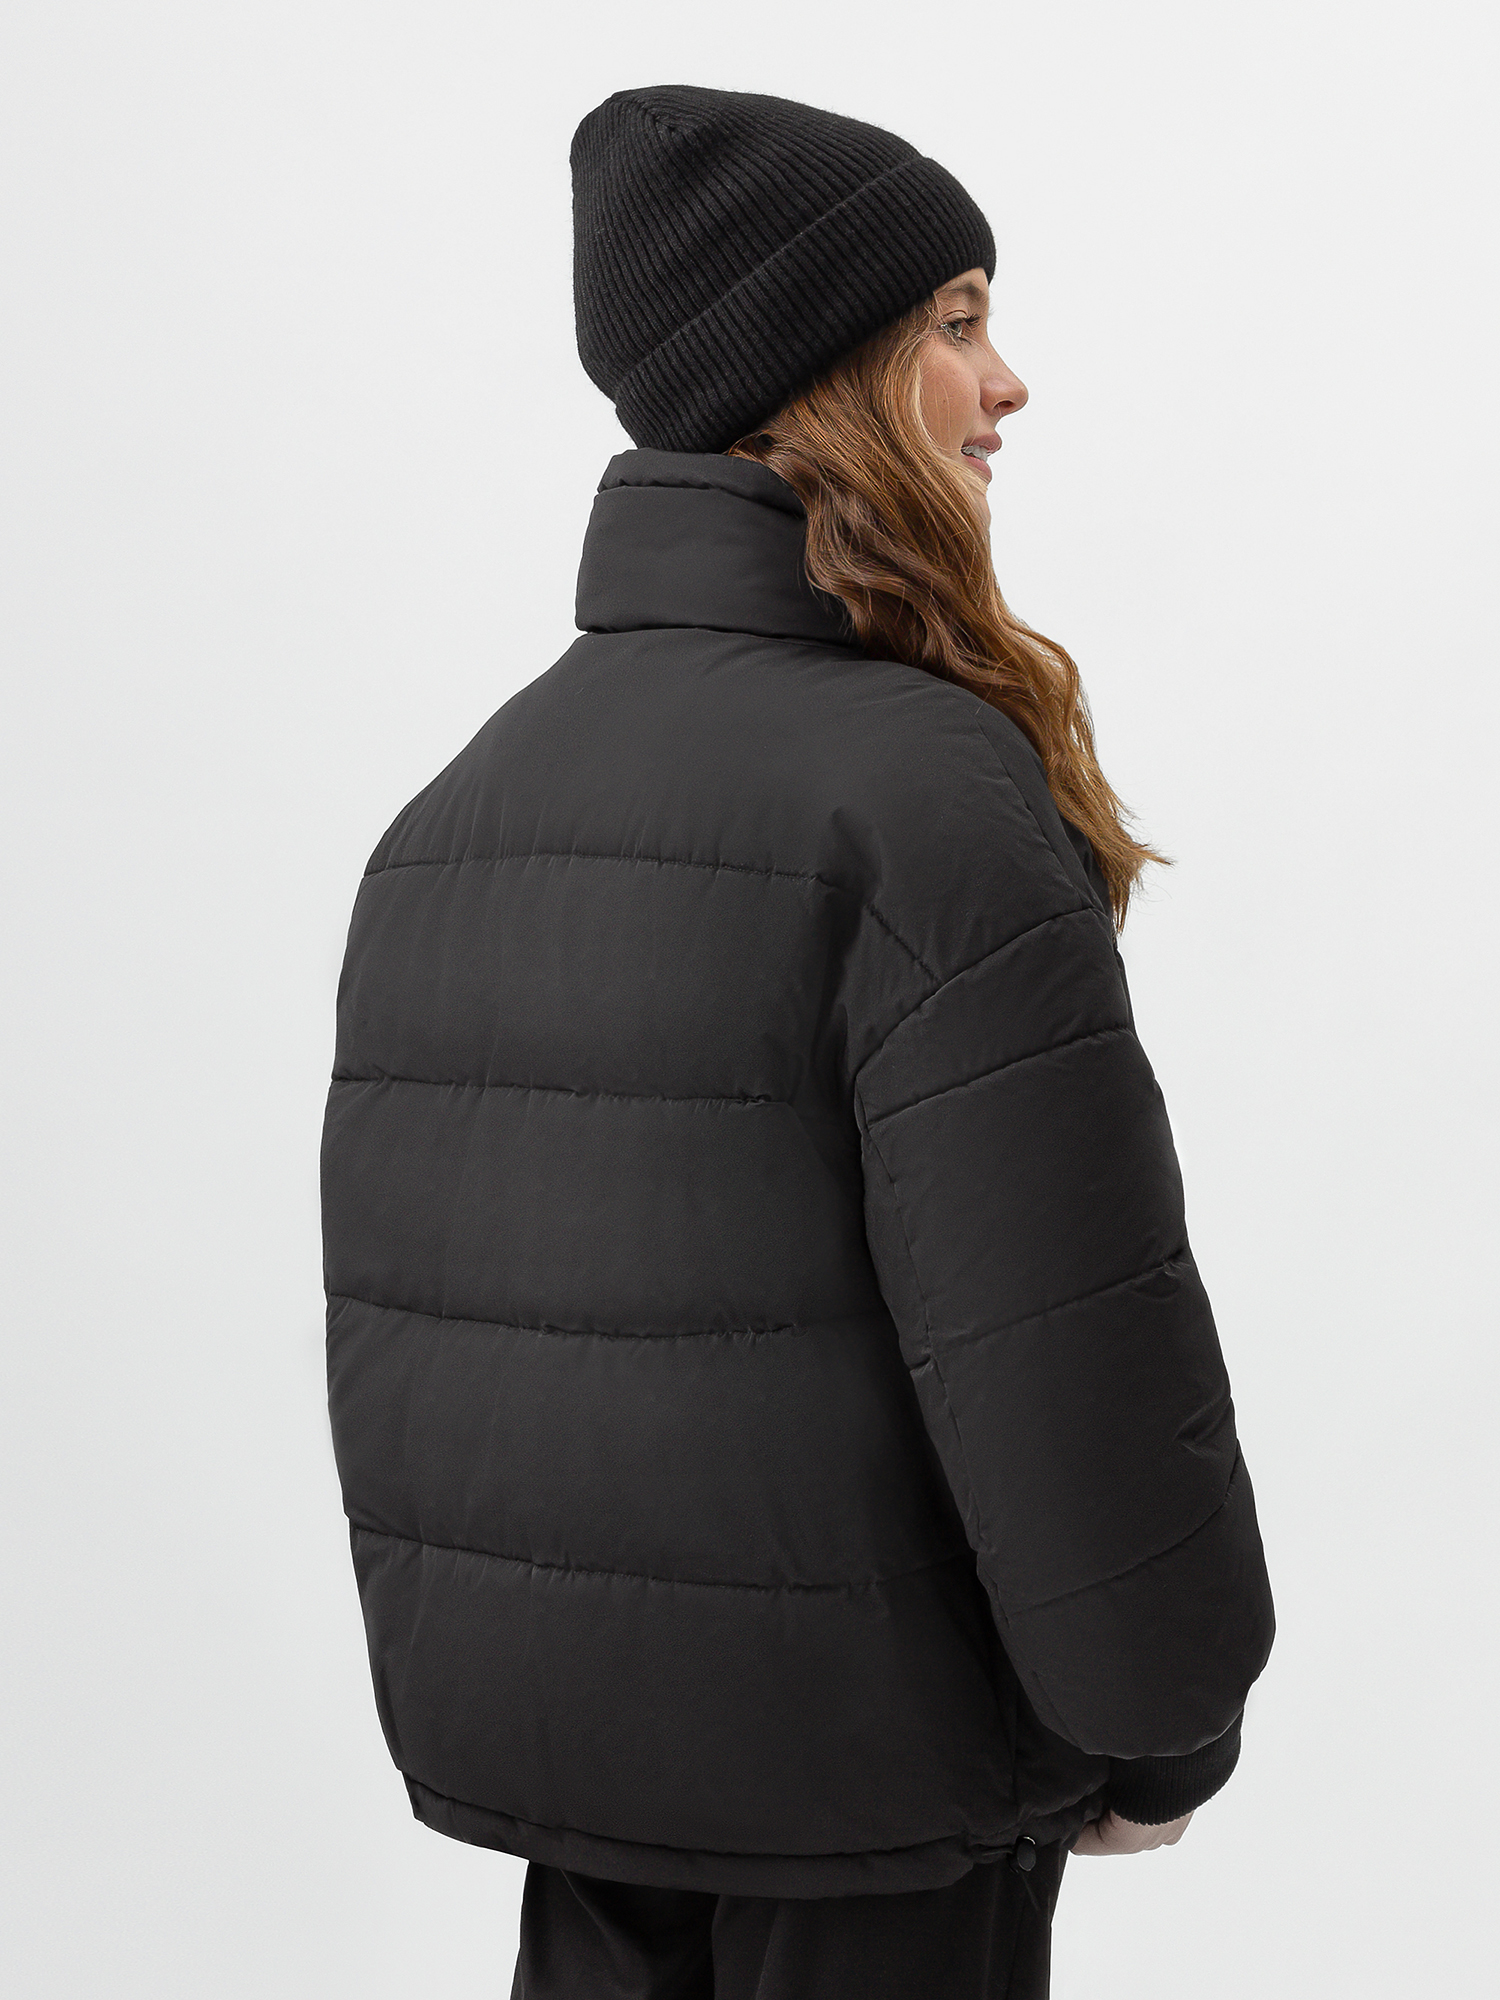 Куртка женская черная 222OZWC41030800, размер XS, цвет черный - фото 2